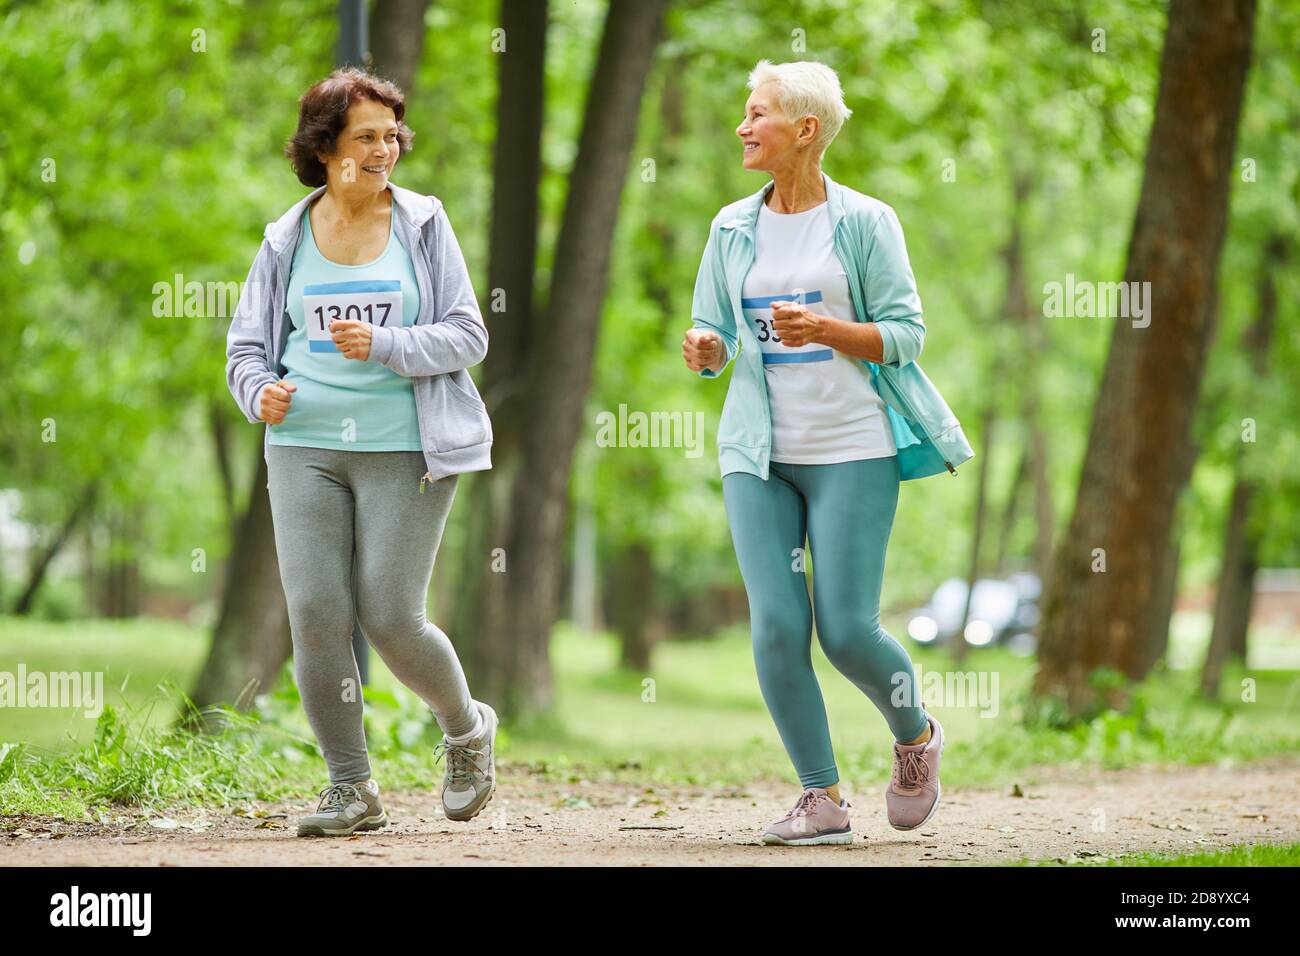 Tiro de cuerpo entero de dos mujeres mayores activas corriendo maratón carrera en el parque de la ciudad hablando entre sí Foto de stock